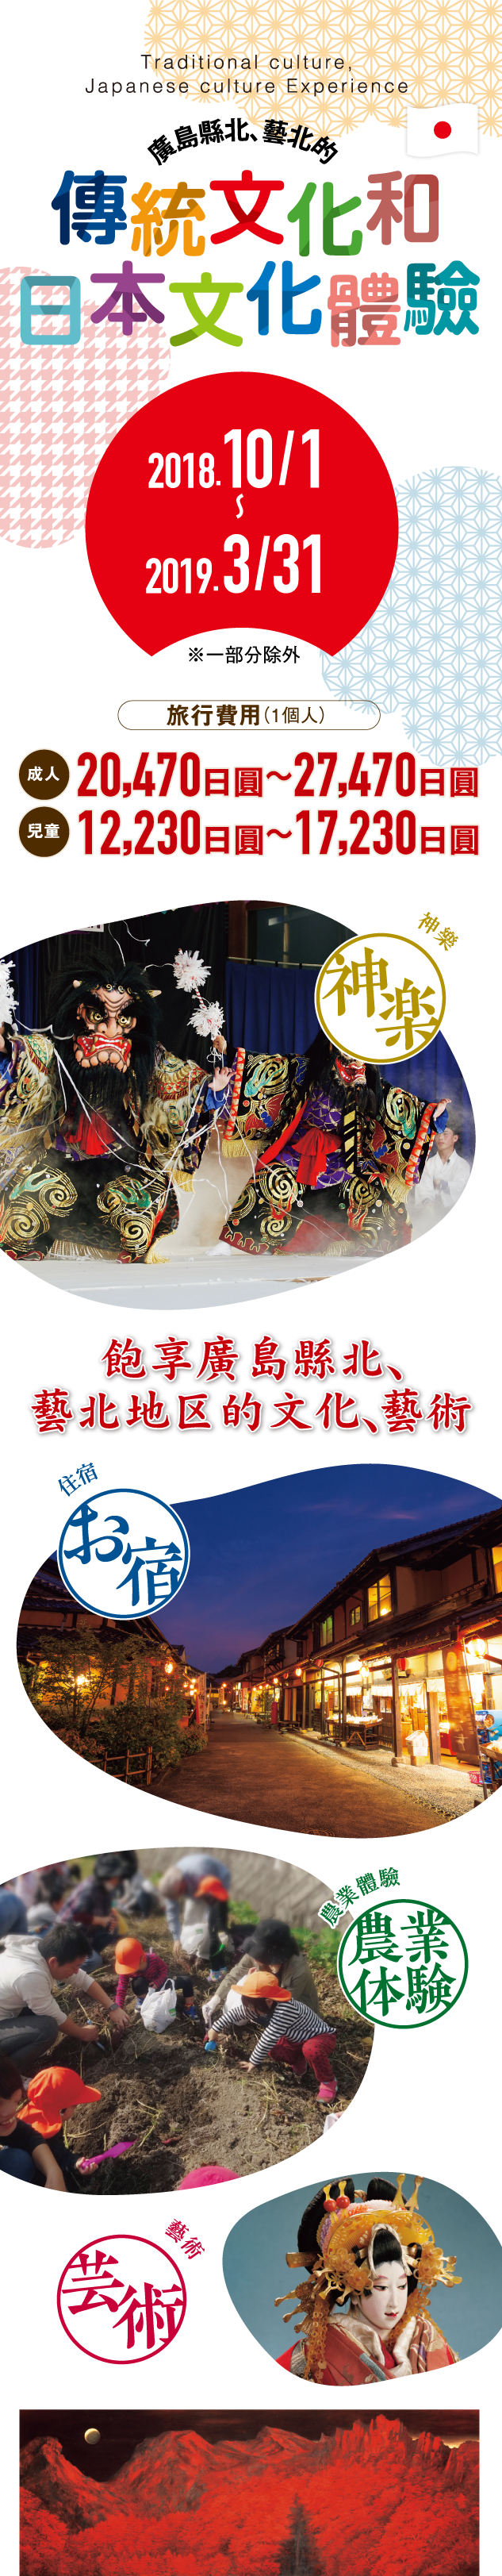 廣島縣北、藝北的 傳統文化和日本文化體驗